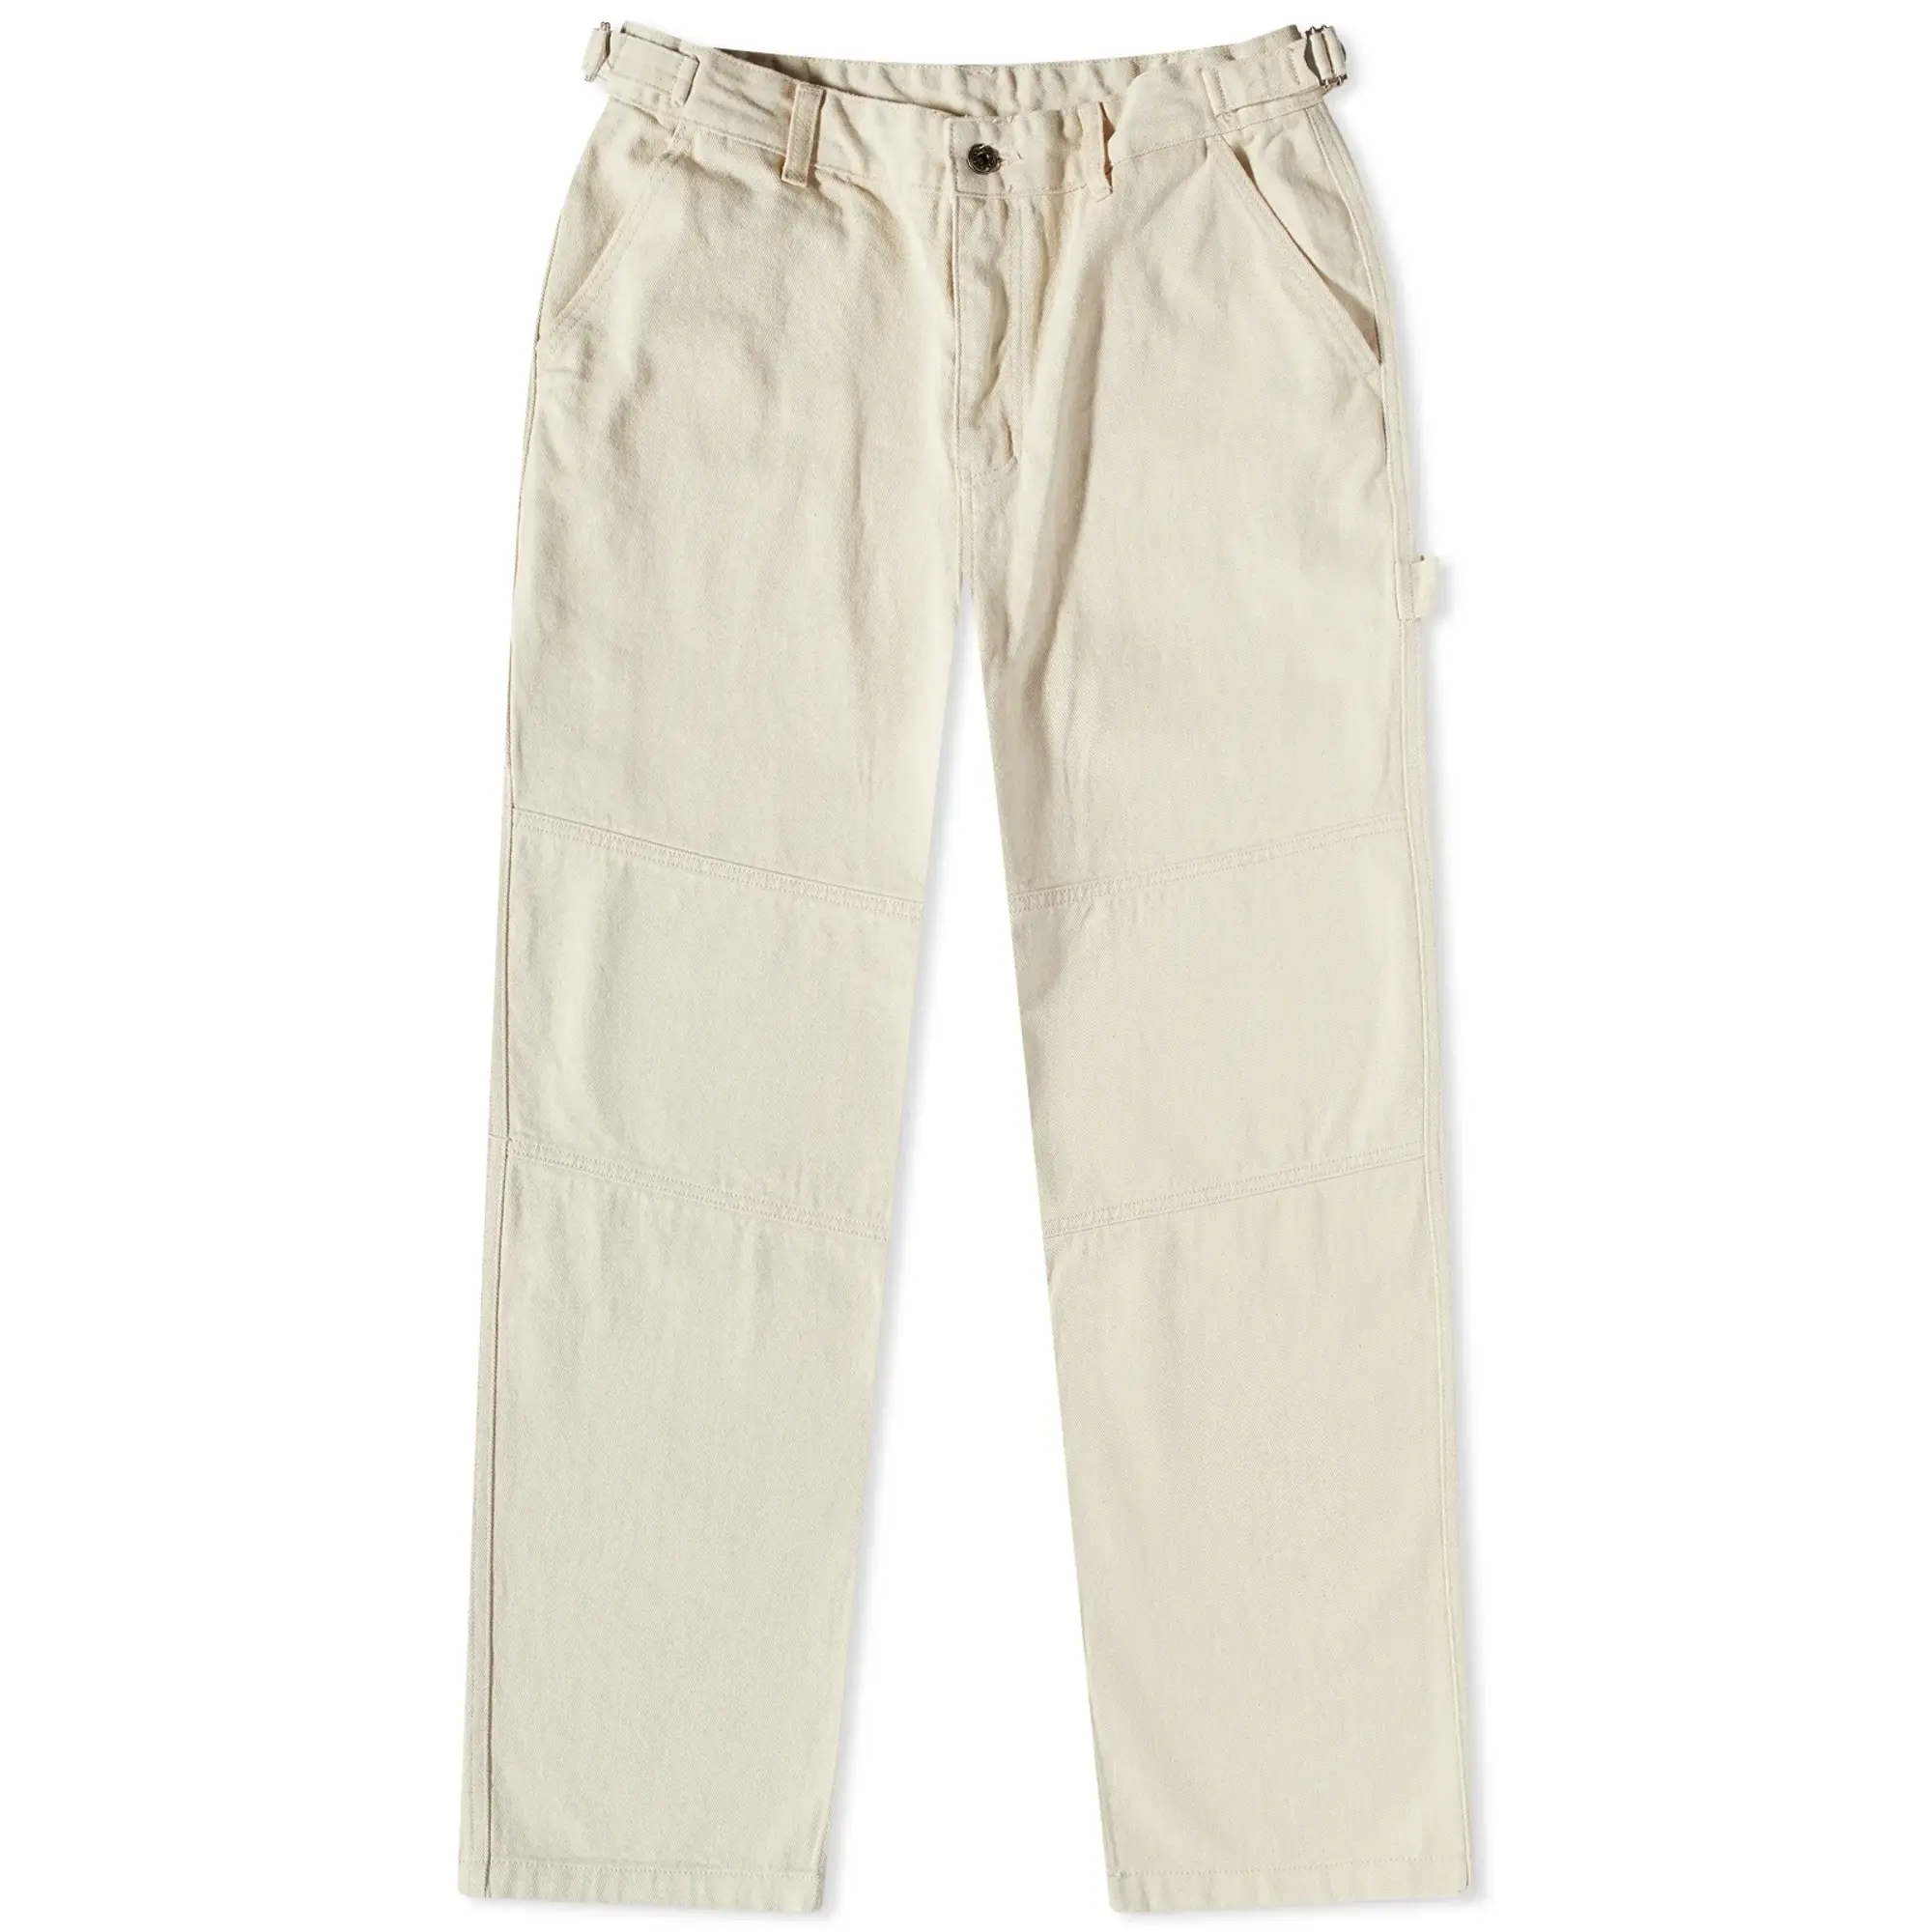 FrizmWORKS Men's Carpenter Pants Natural